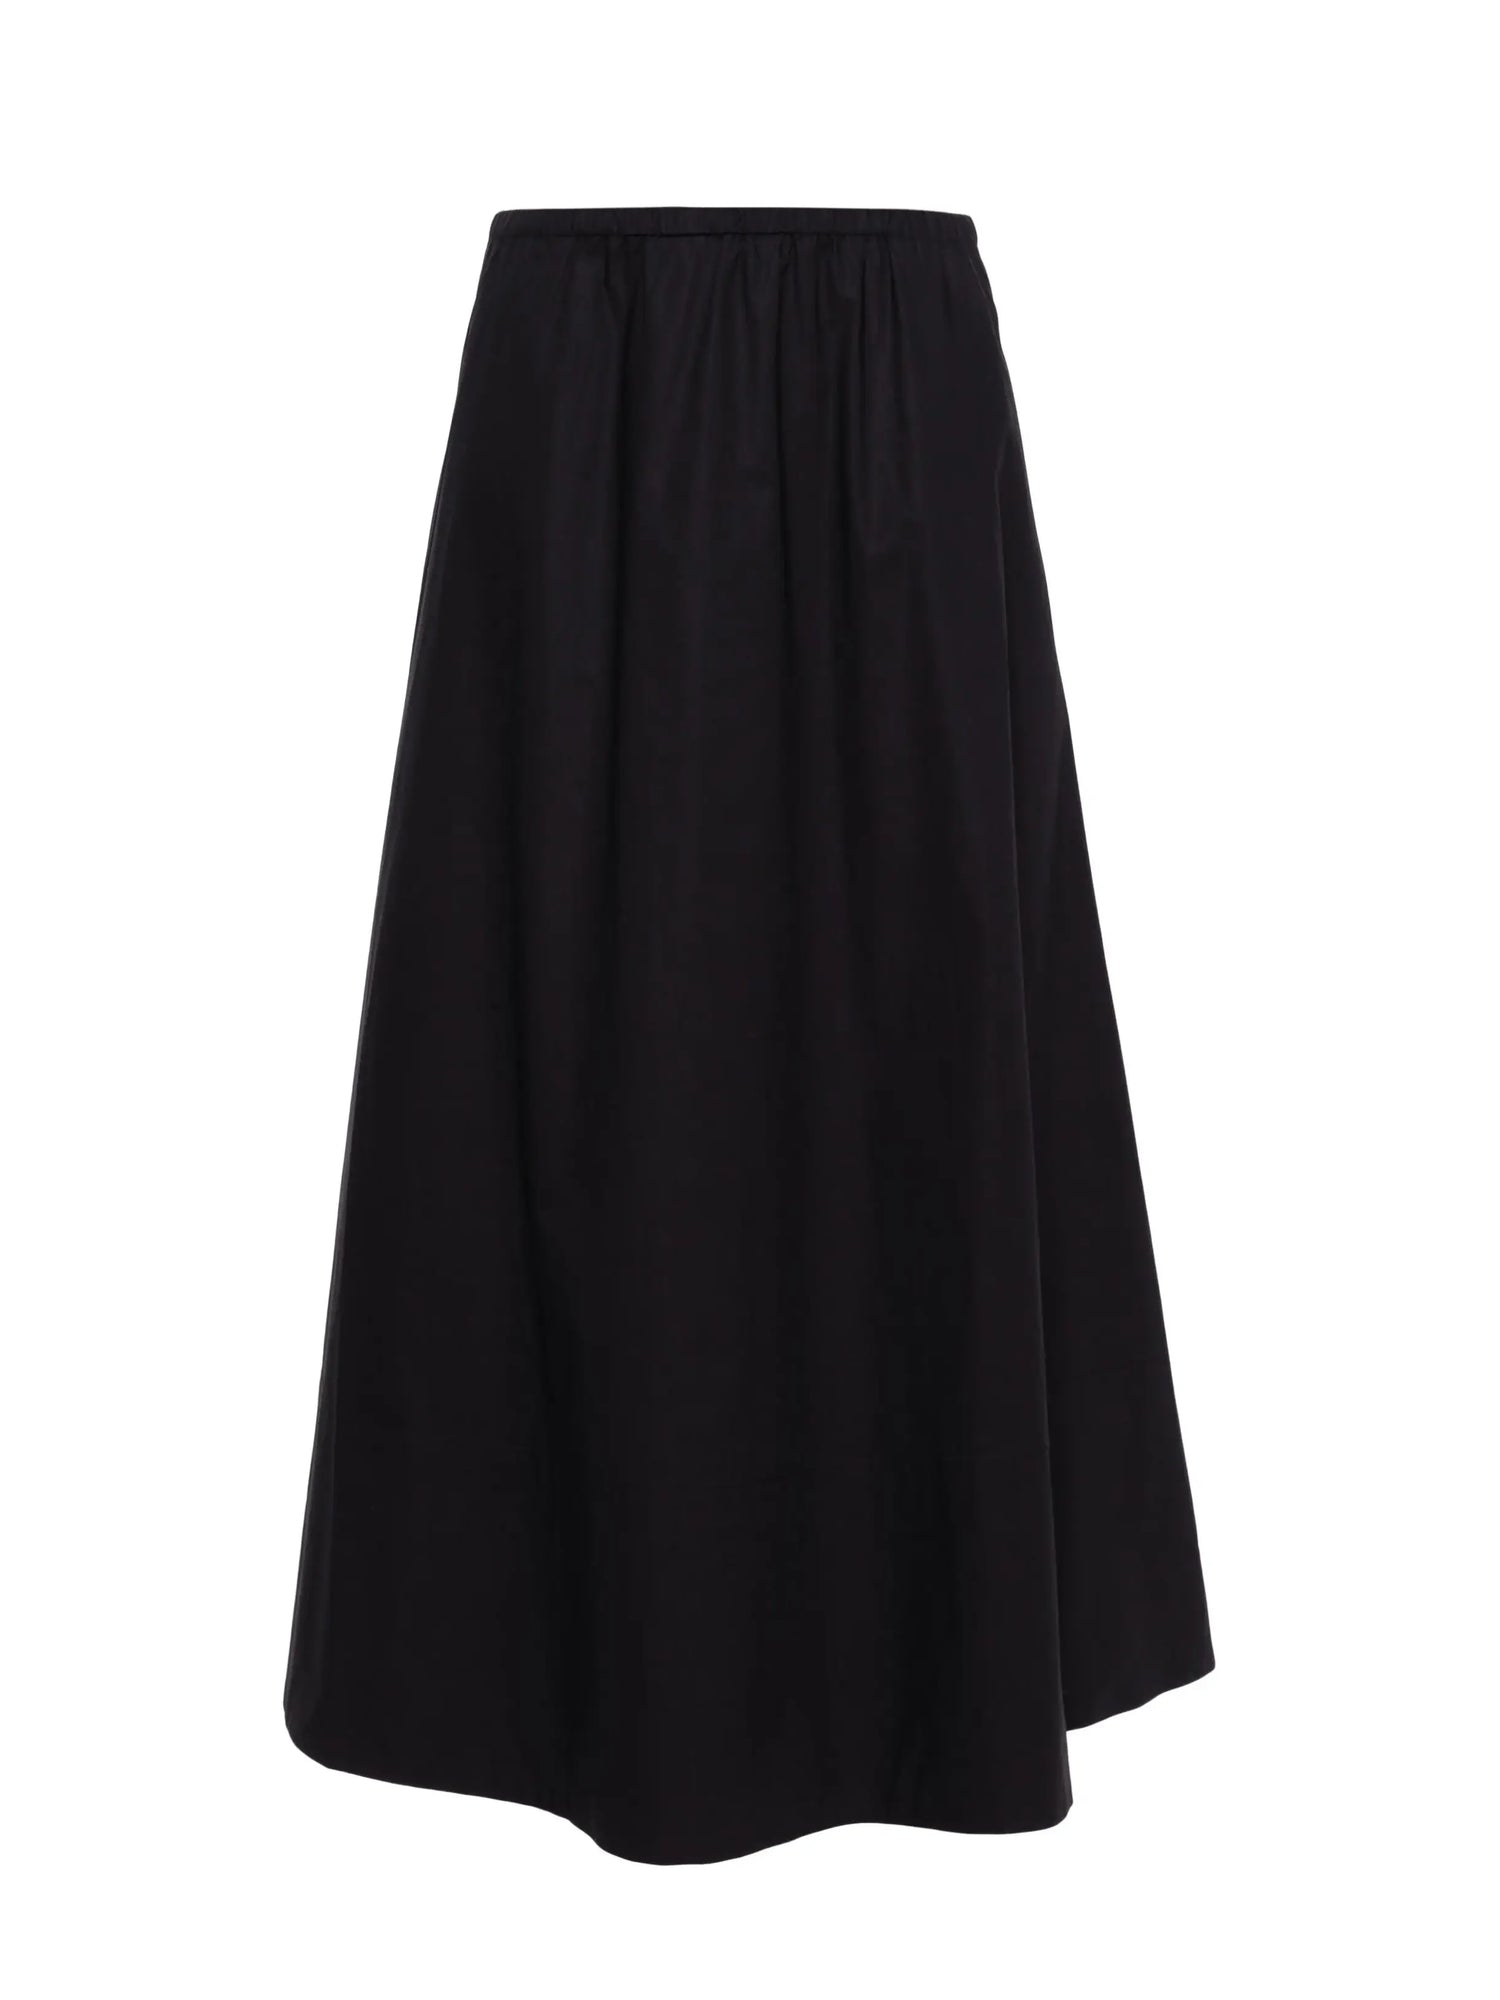 PHEOBES skirt, black